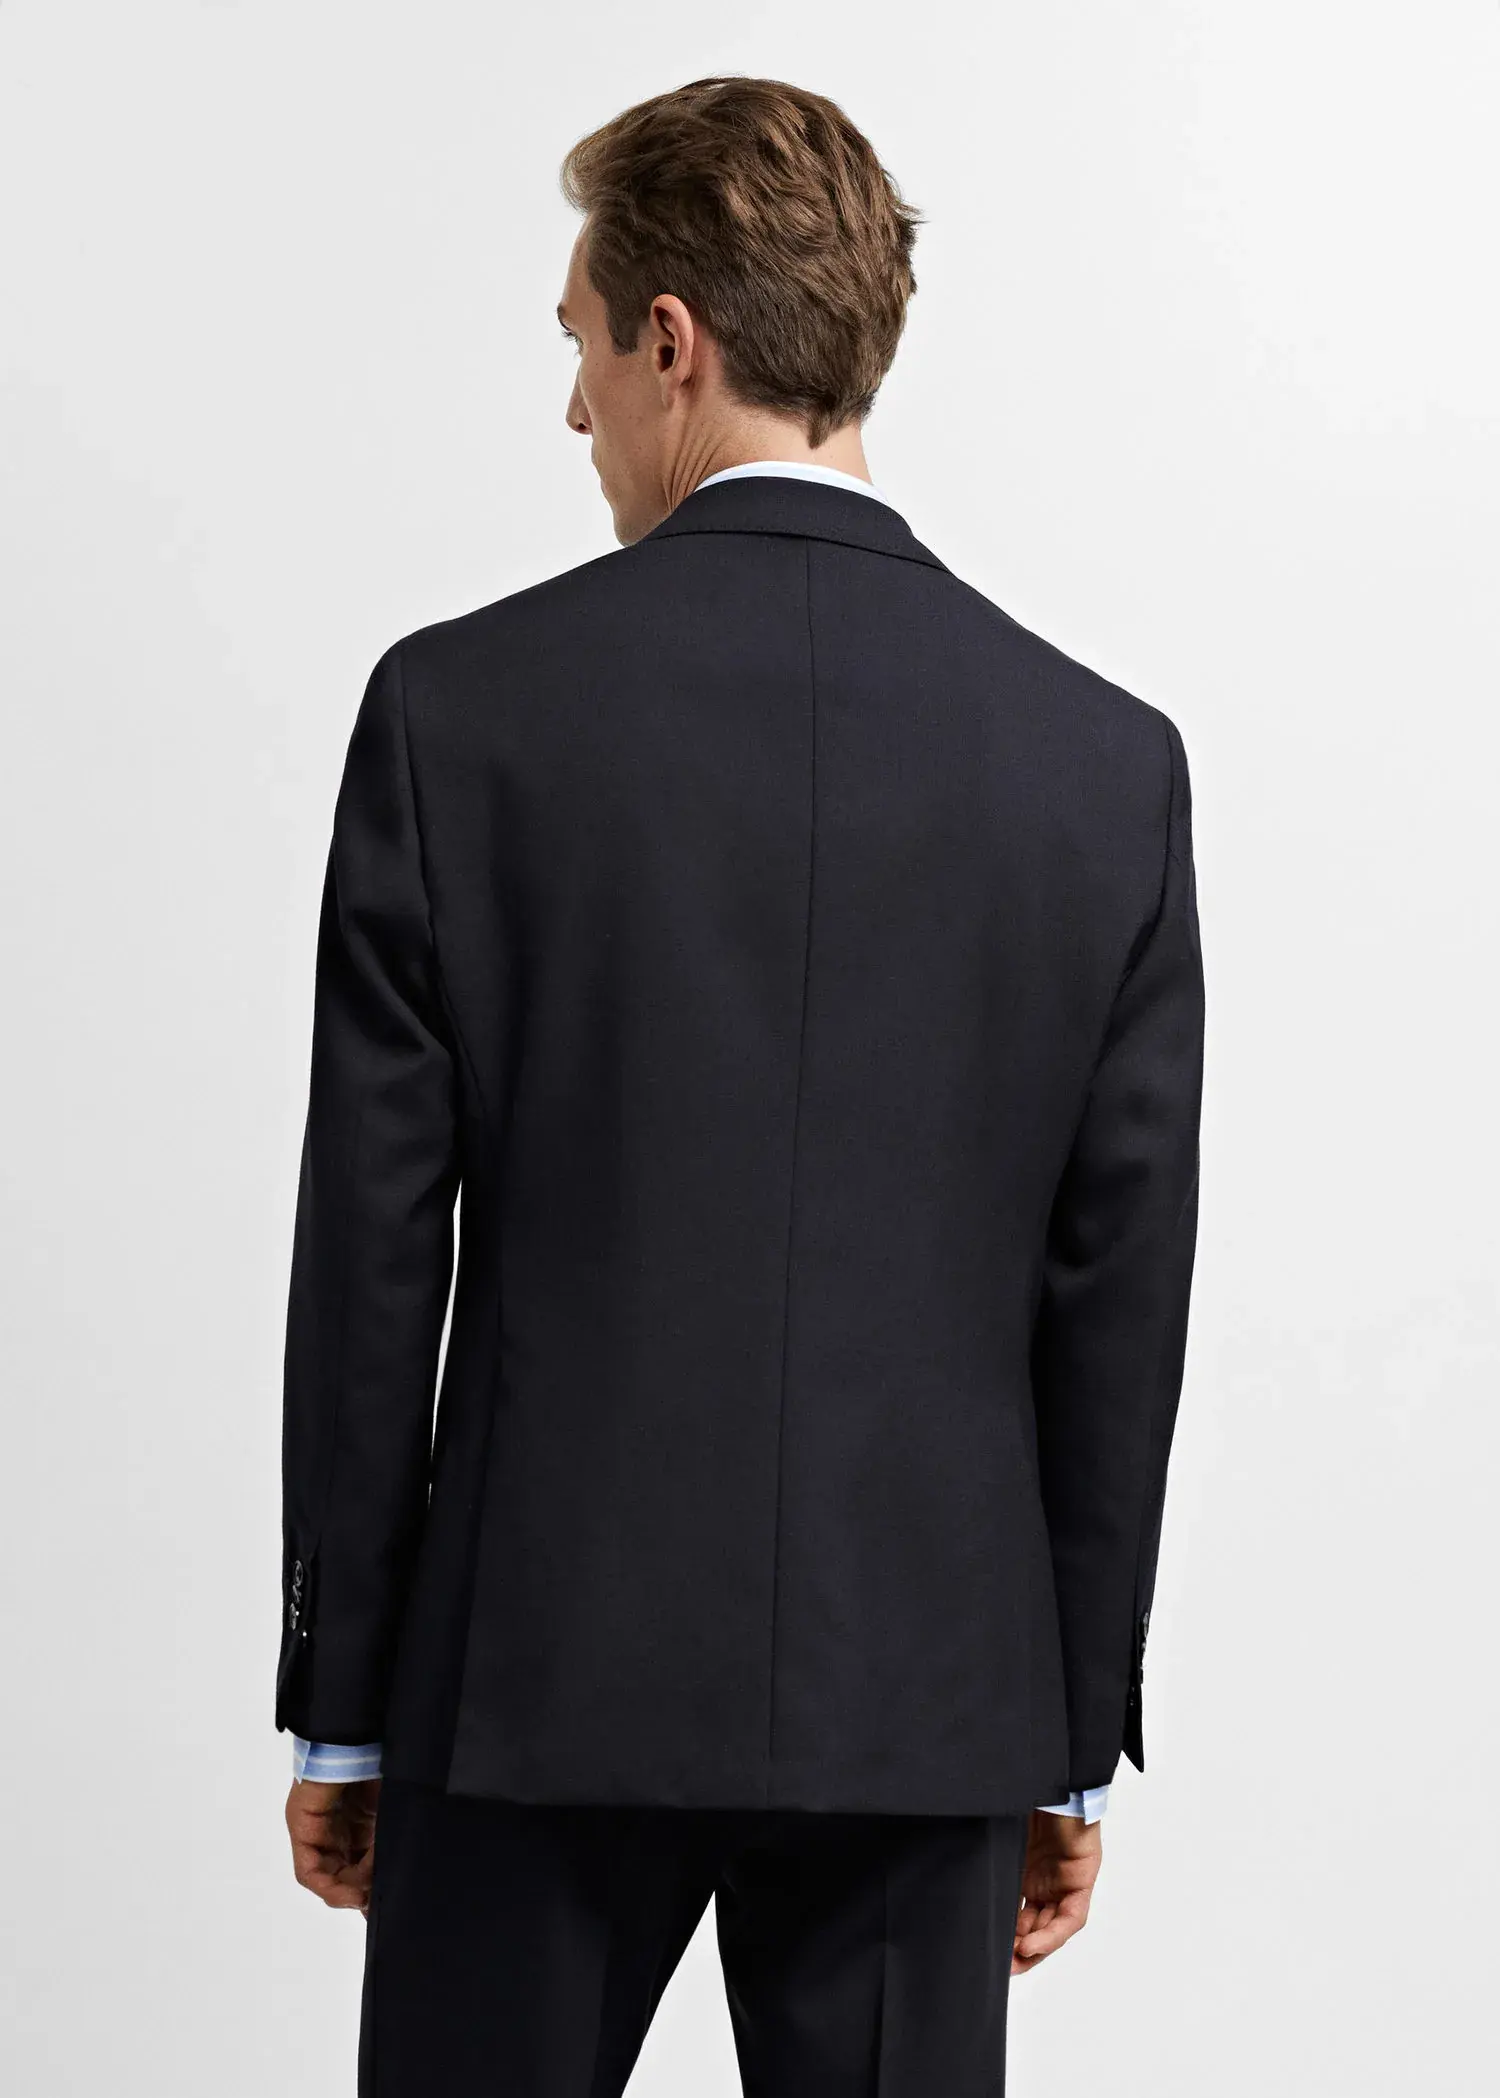 Mango 100% virgin wool suit jacket. 3